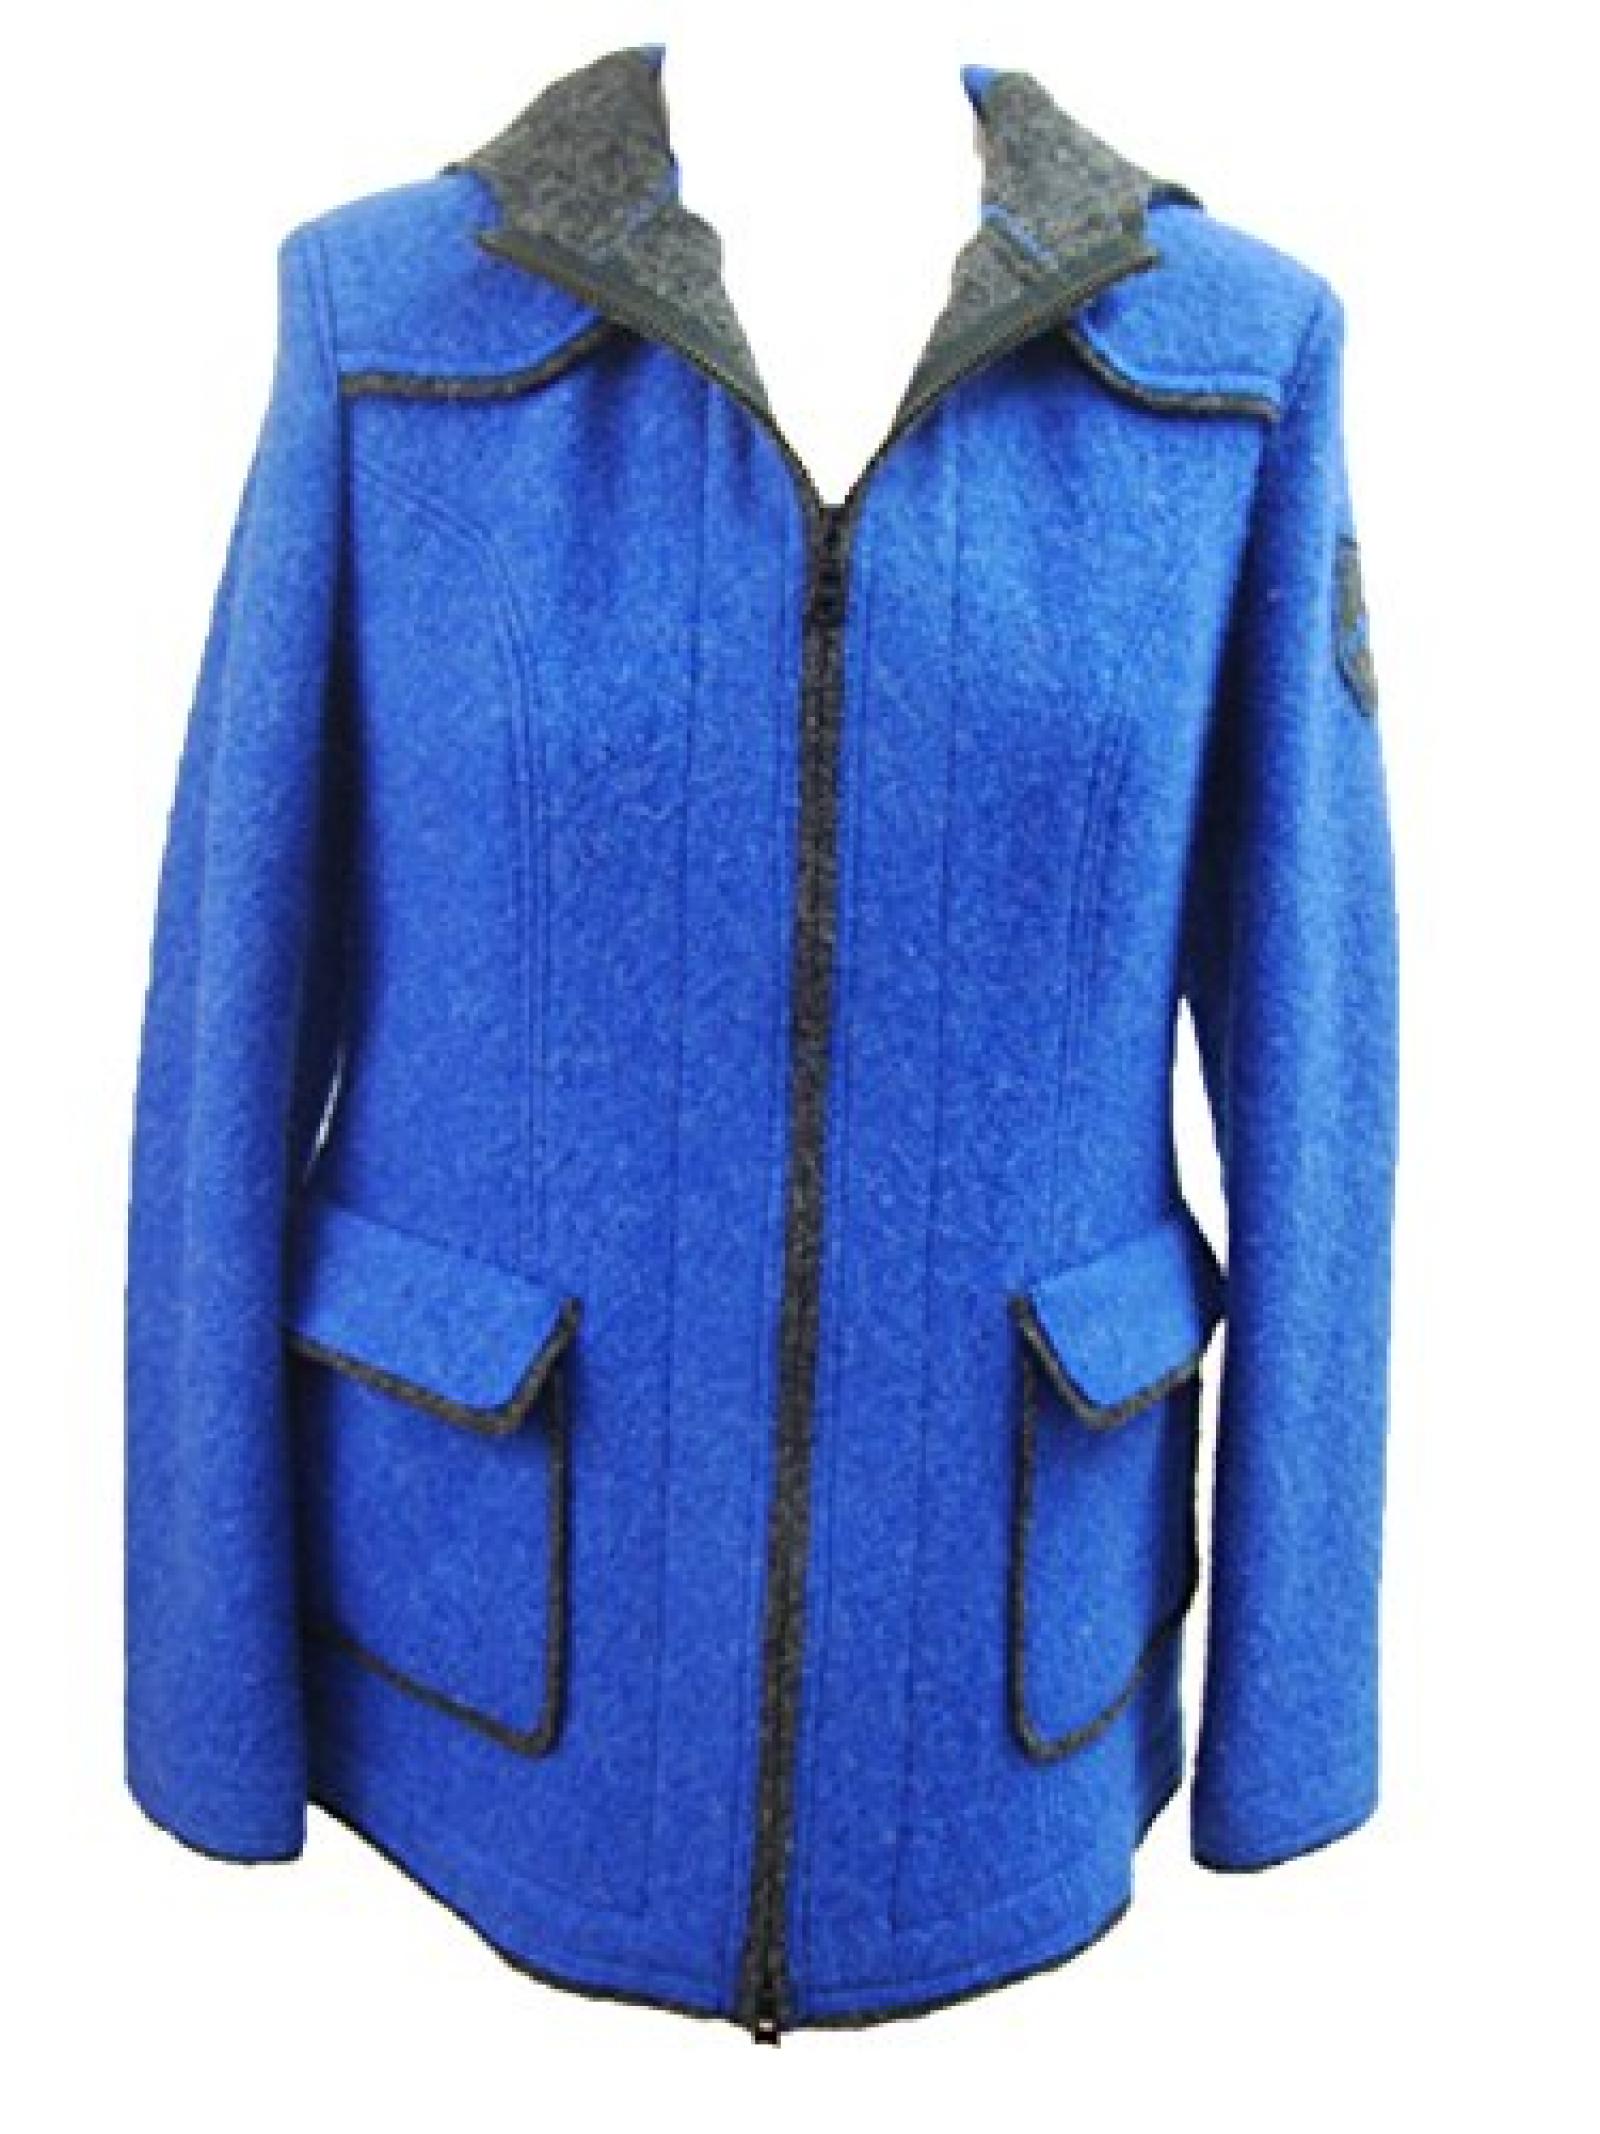 Damen Walkjanker Winterwolljacke blau mit Reißverschluss und Kapuze 